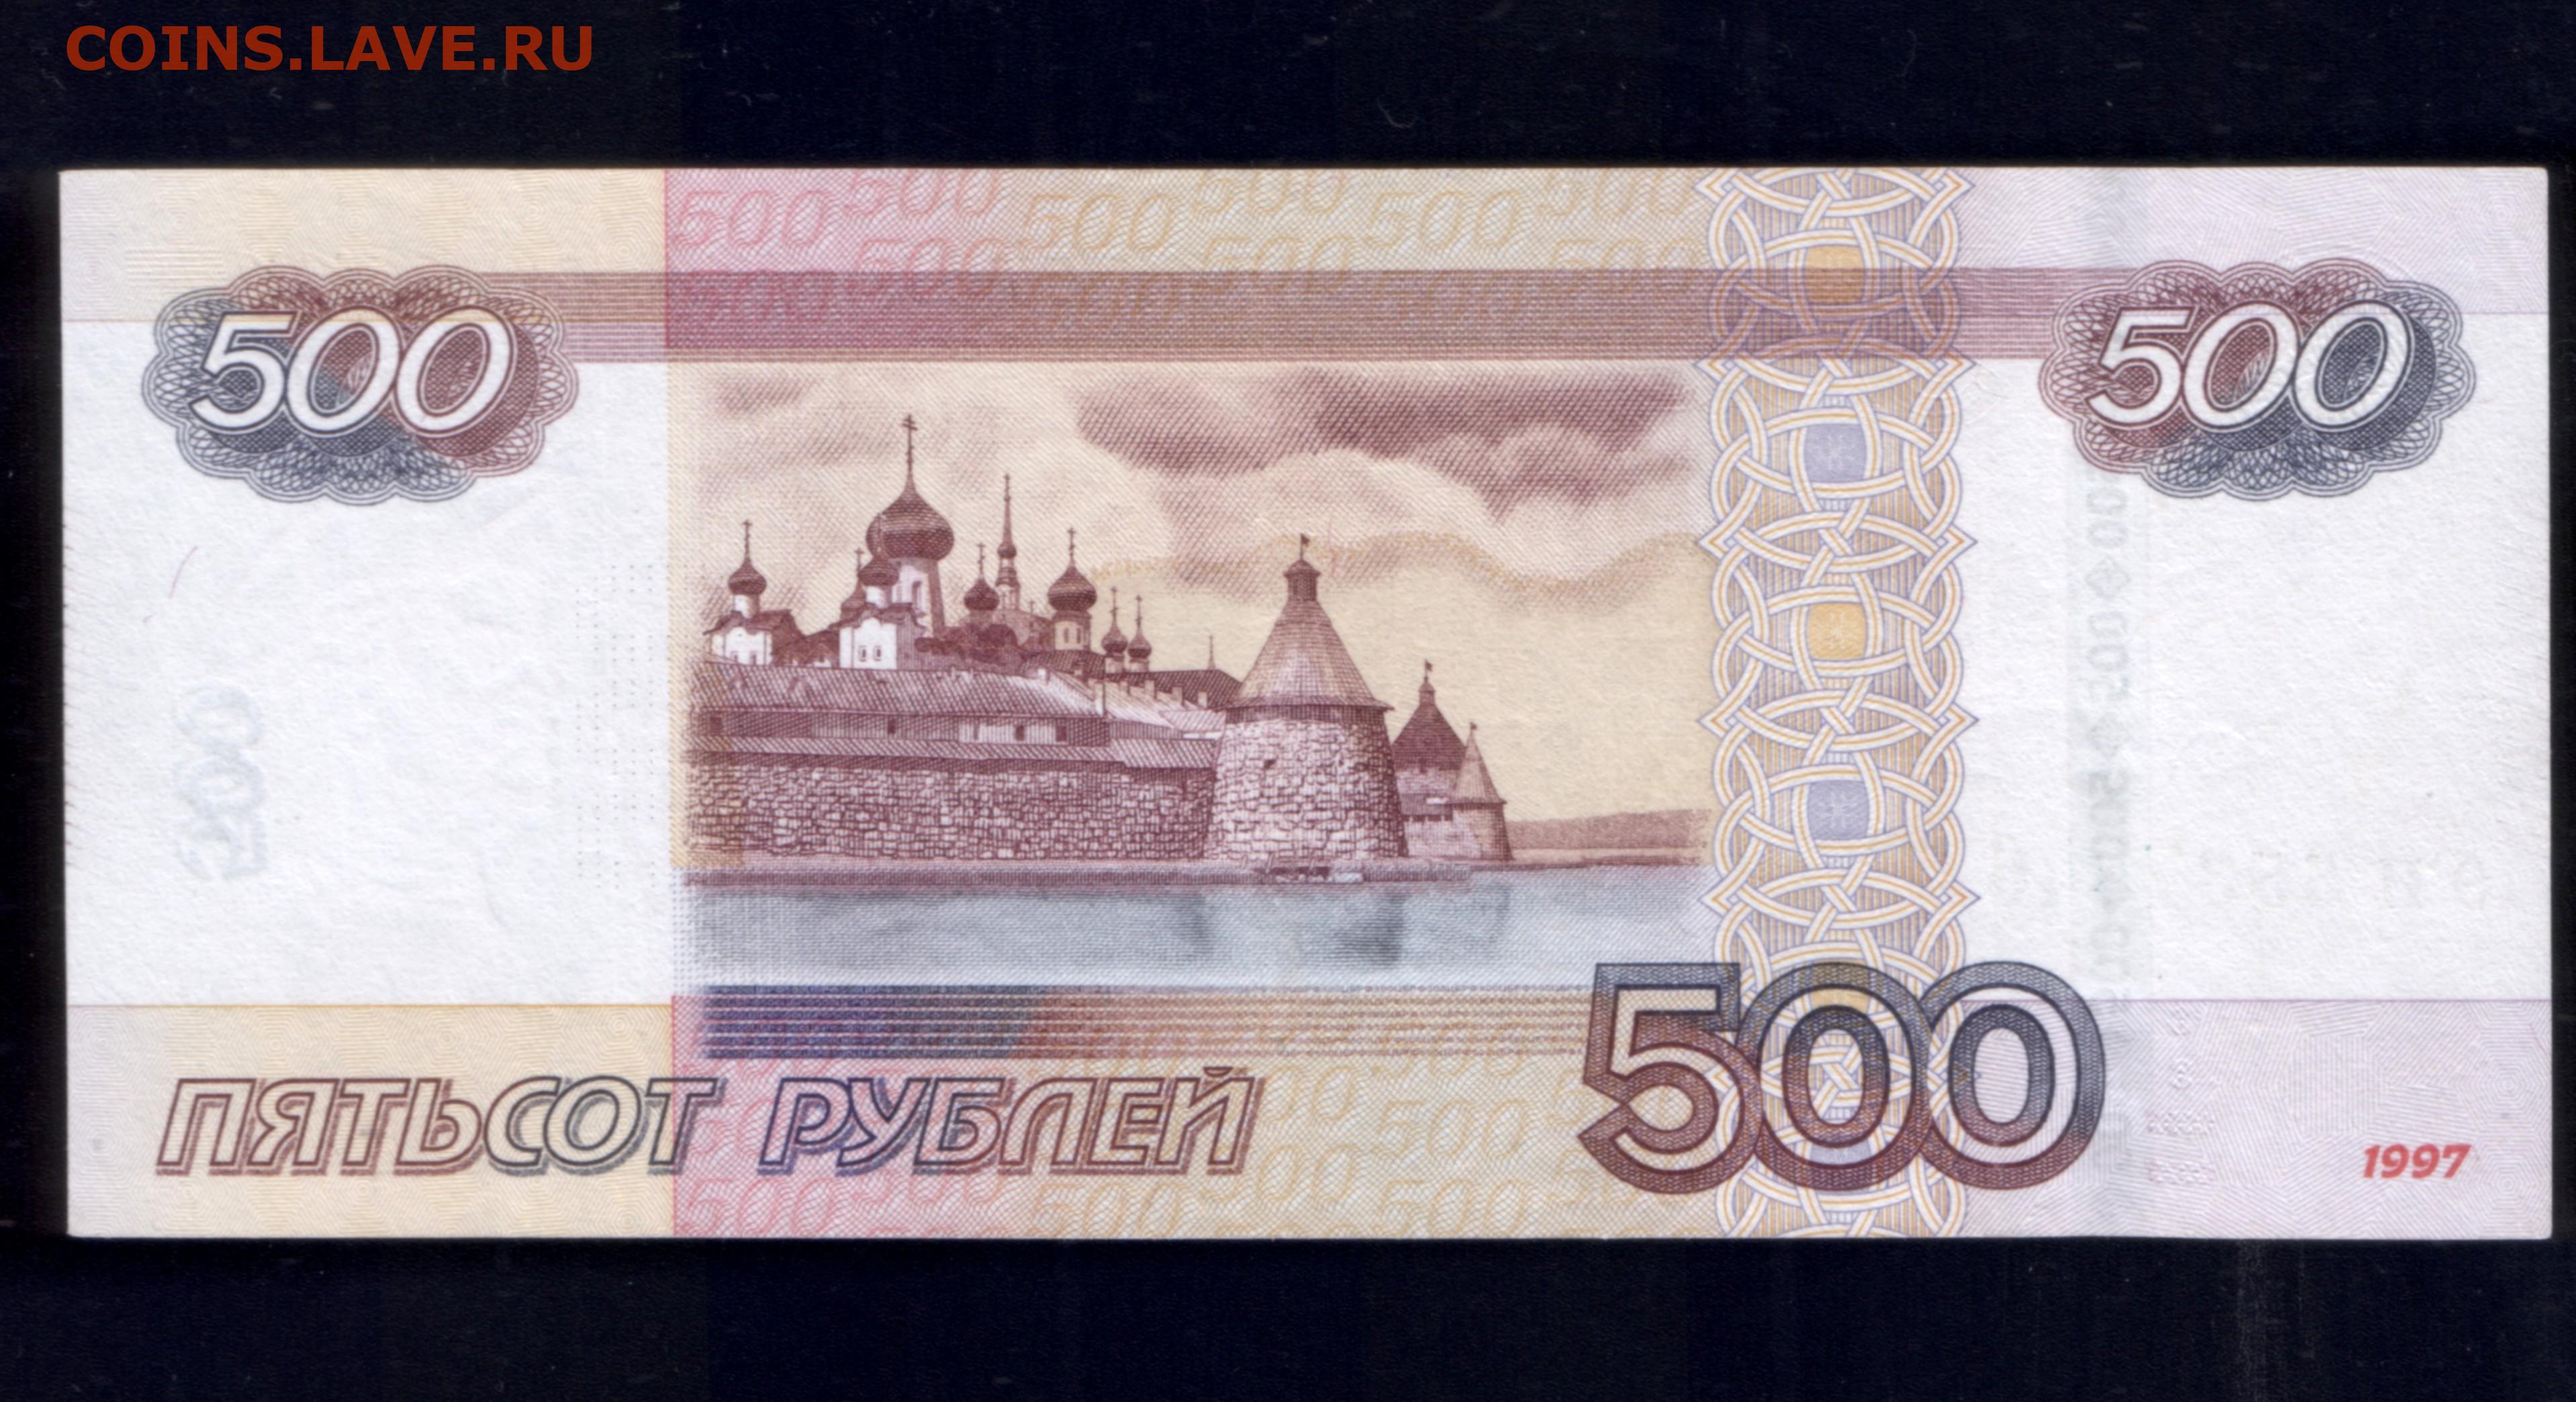 Долями 500 рублей. Купюра 500 рублей. Банкнота 500 рублей. Купюра номиналом 500 рублей. 500 Рублевая купюра.